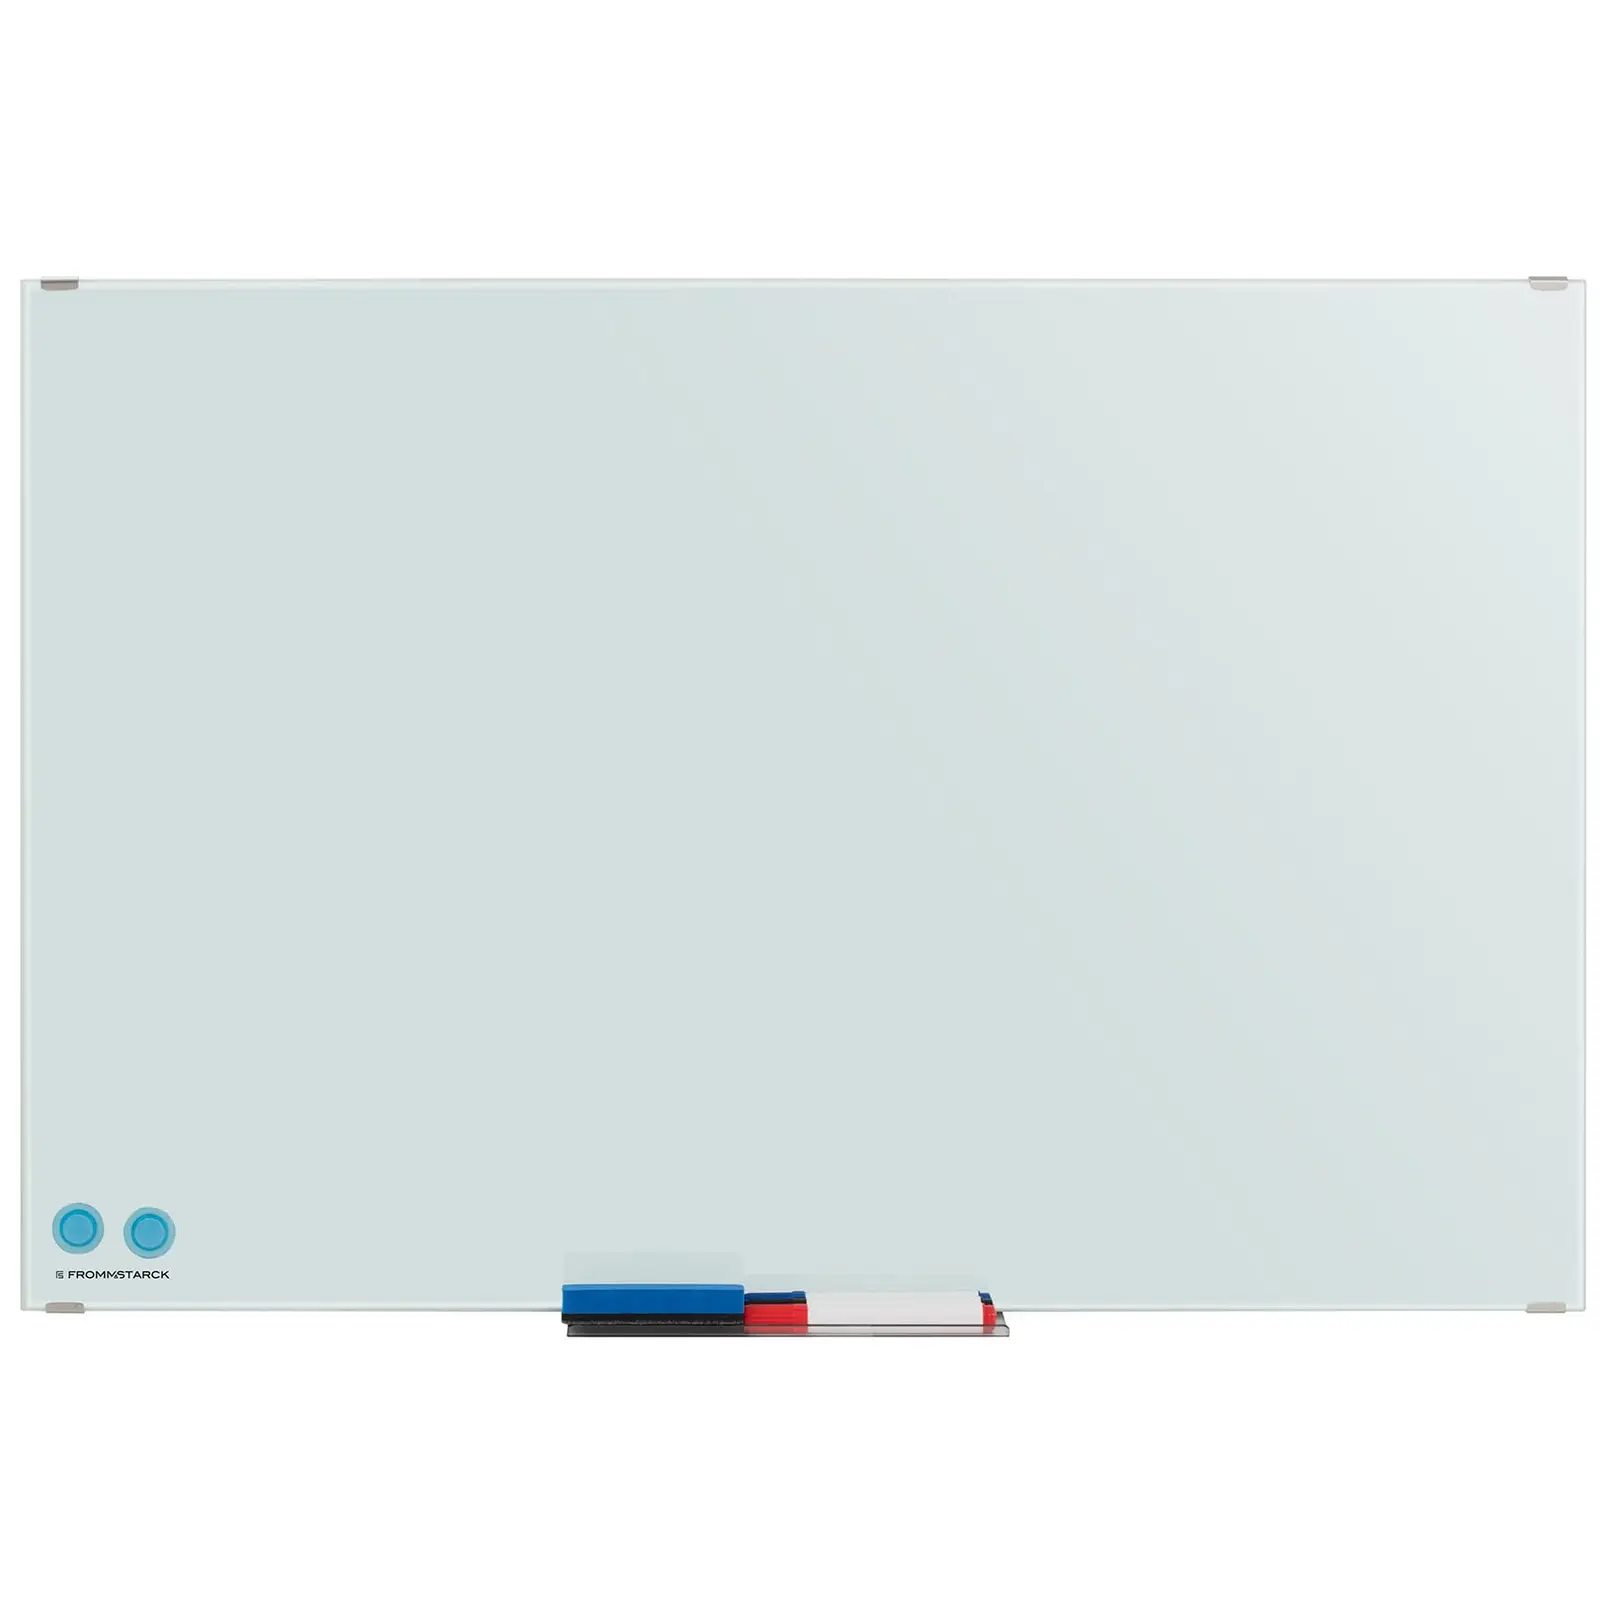 Occasion Tableau blanc magnétique - 60 x 90 x 0,4 cm